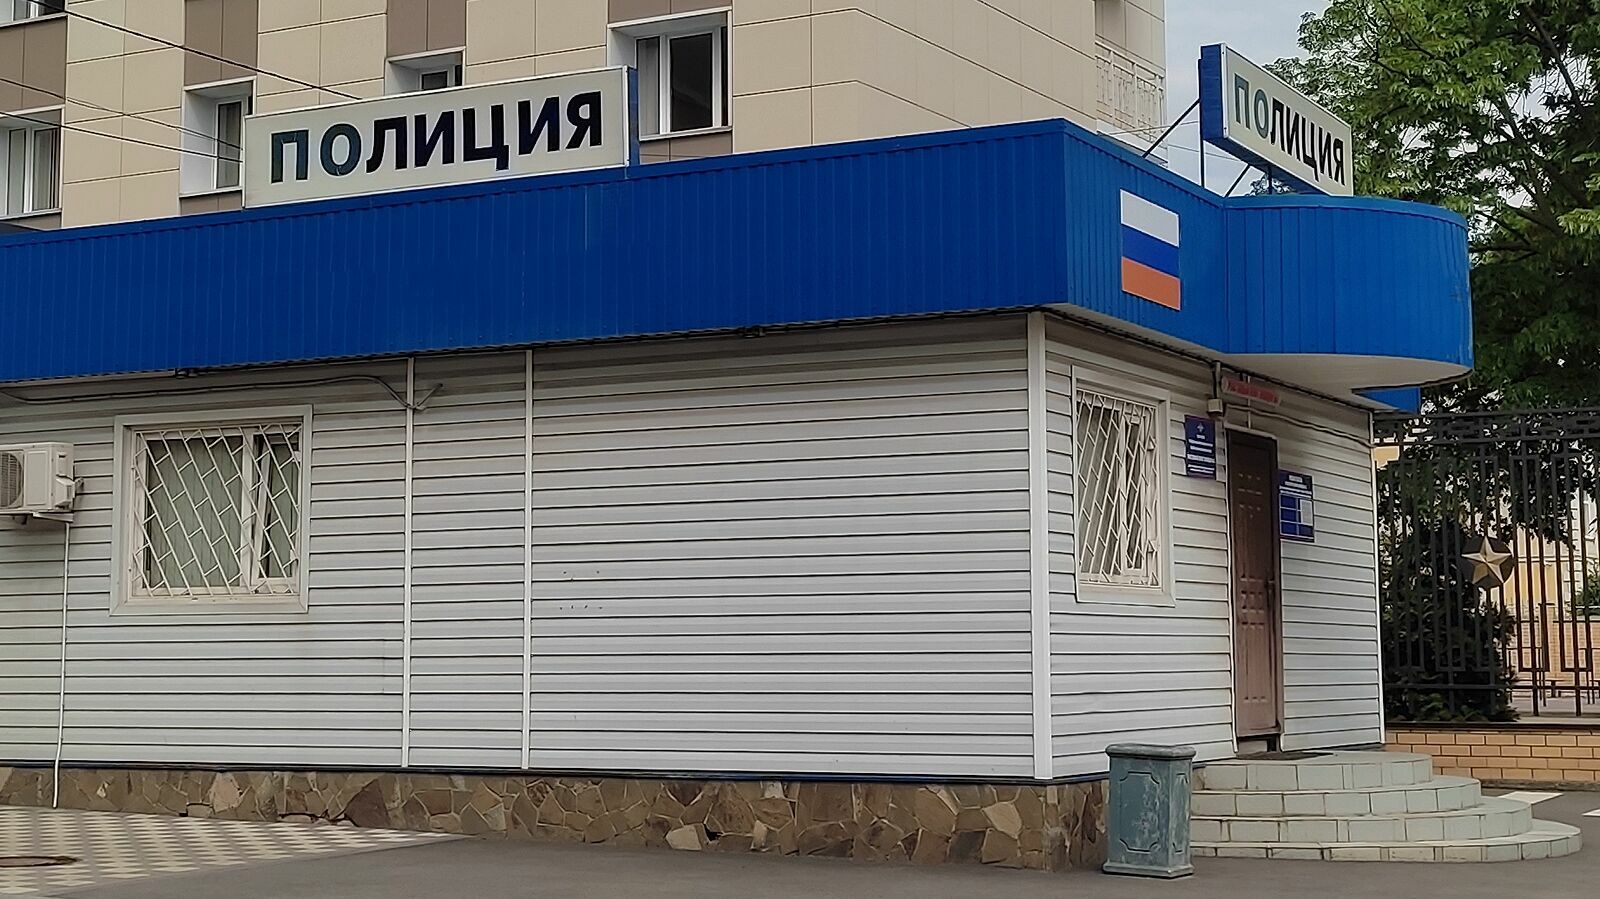 В Новороссийске девушек заподозрили в краже, а они избили сотрудниц магазина